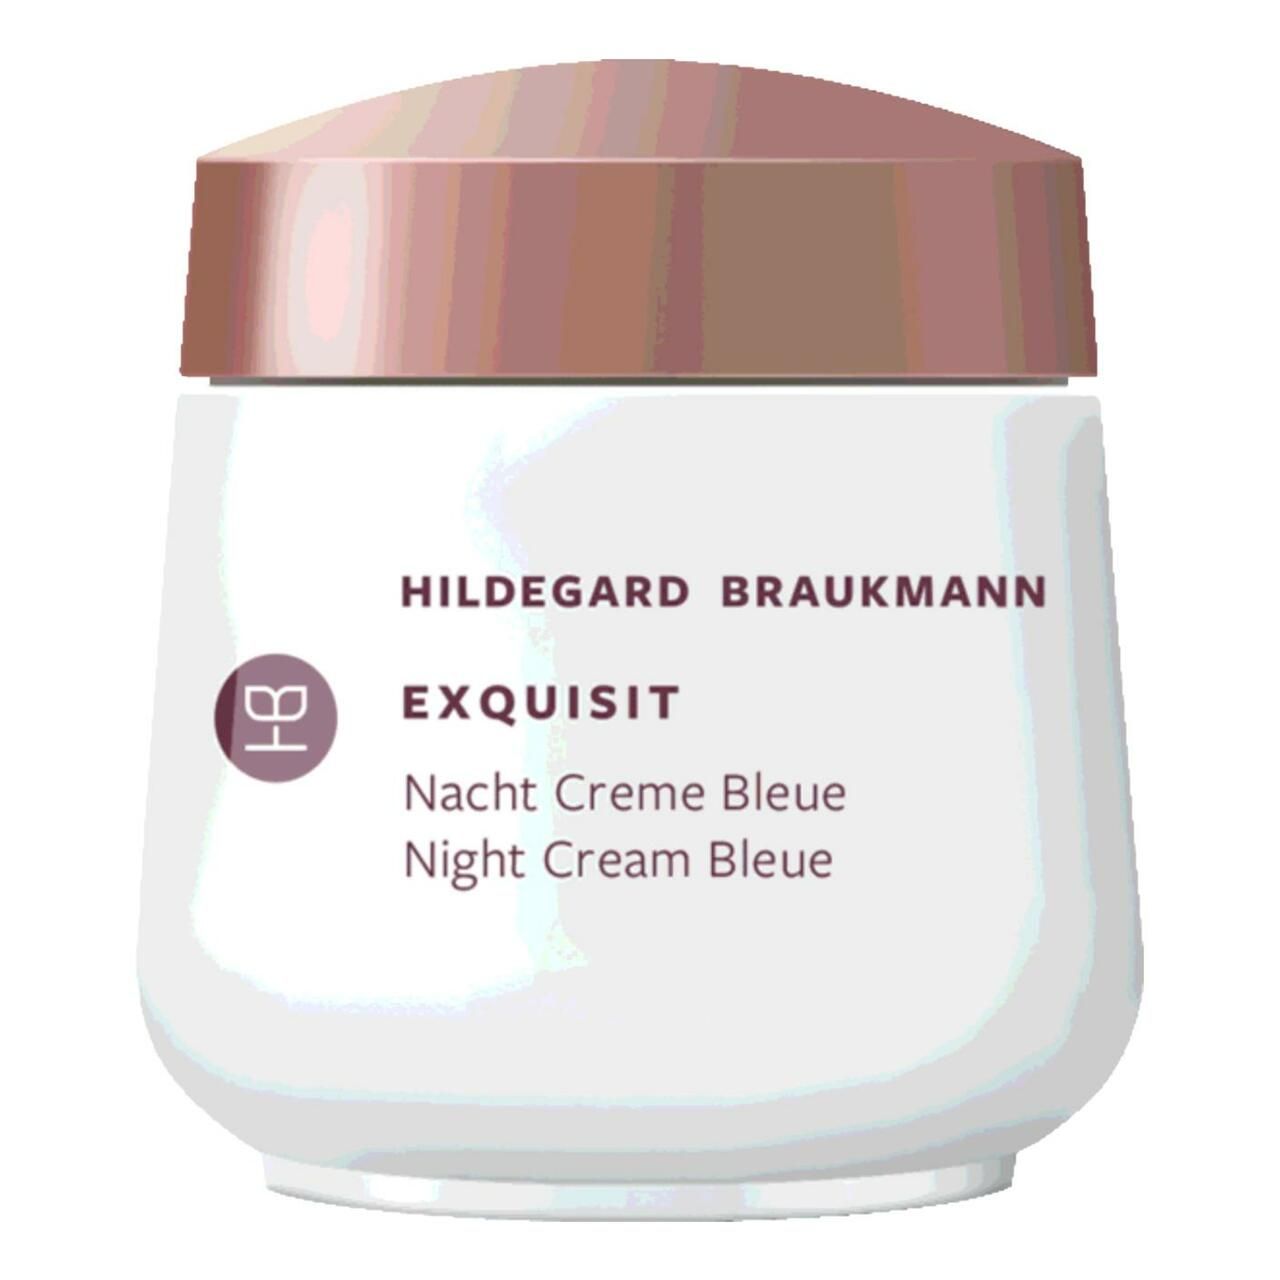 Hildegard Braukmann, Exquisit Creme Bleue Nacht